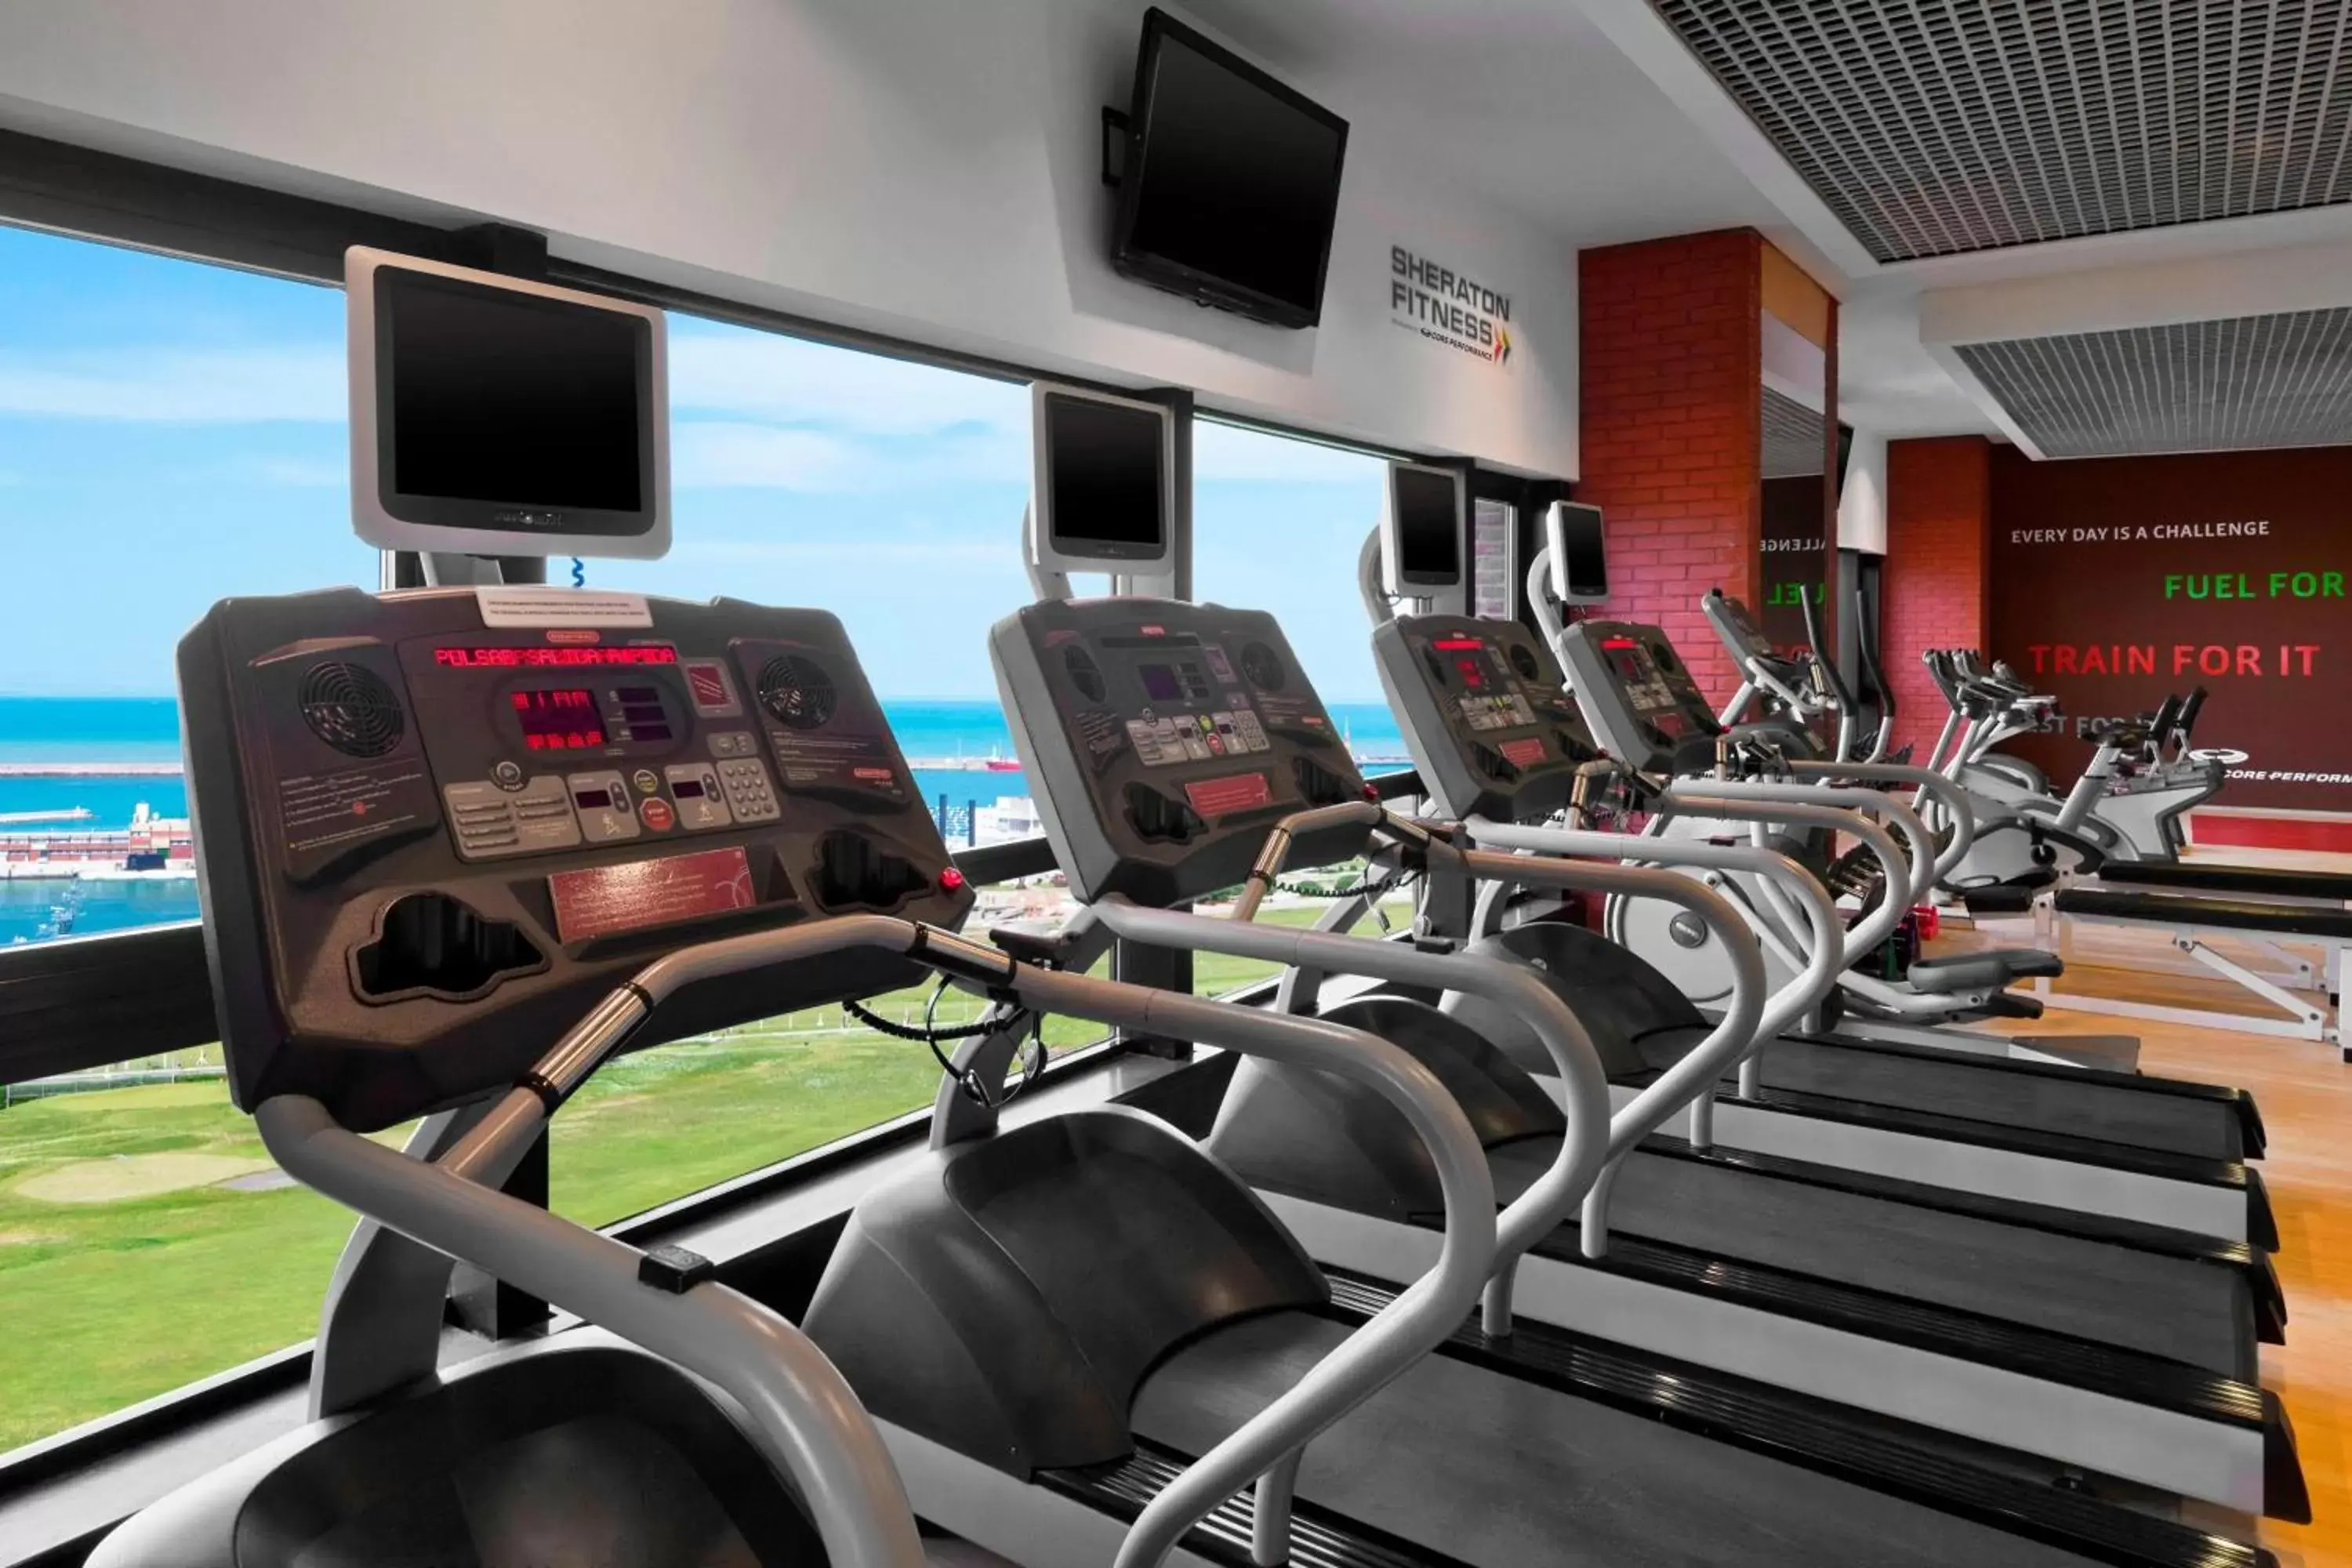 Fitness centre/facilities, Fitness Center/Facilities in Sheraton Mar Del Plata Hotel